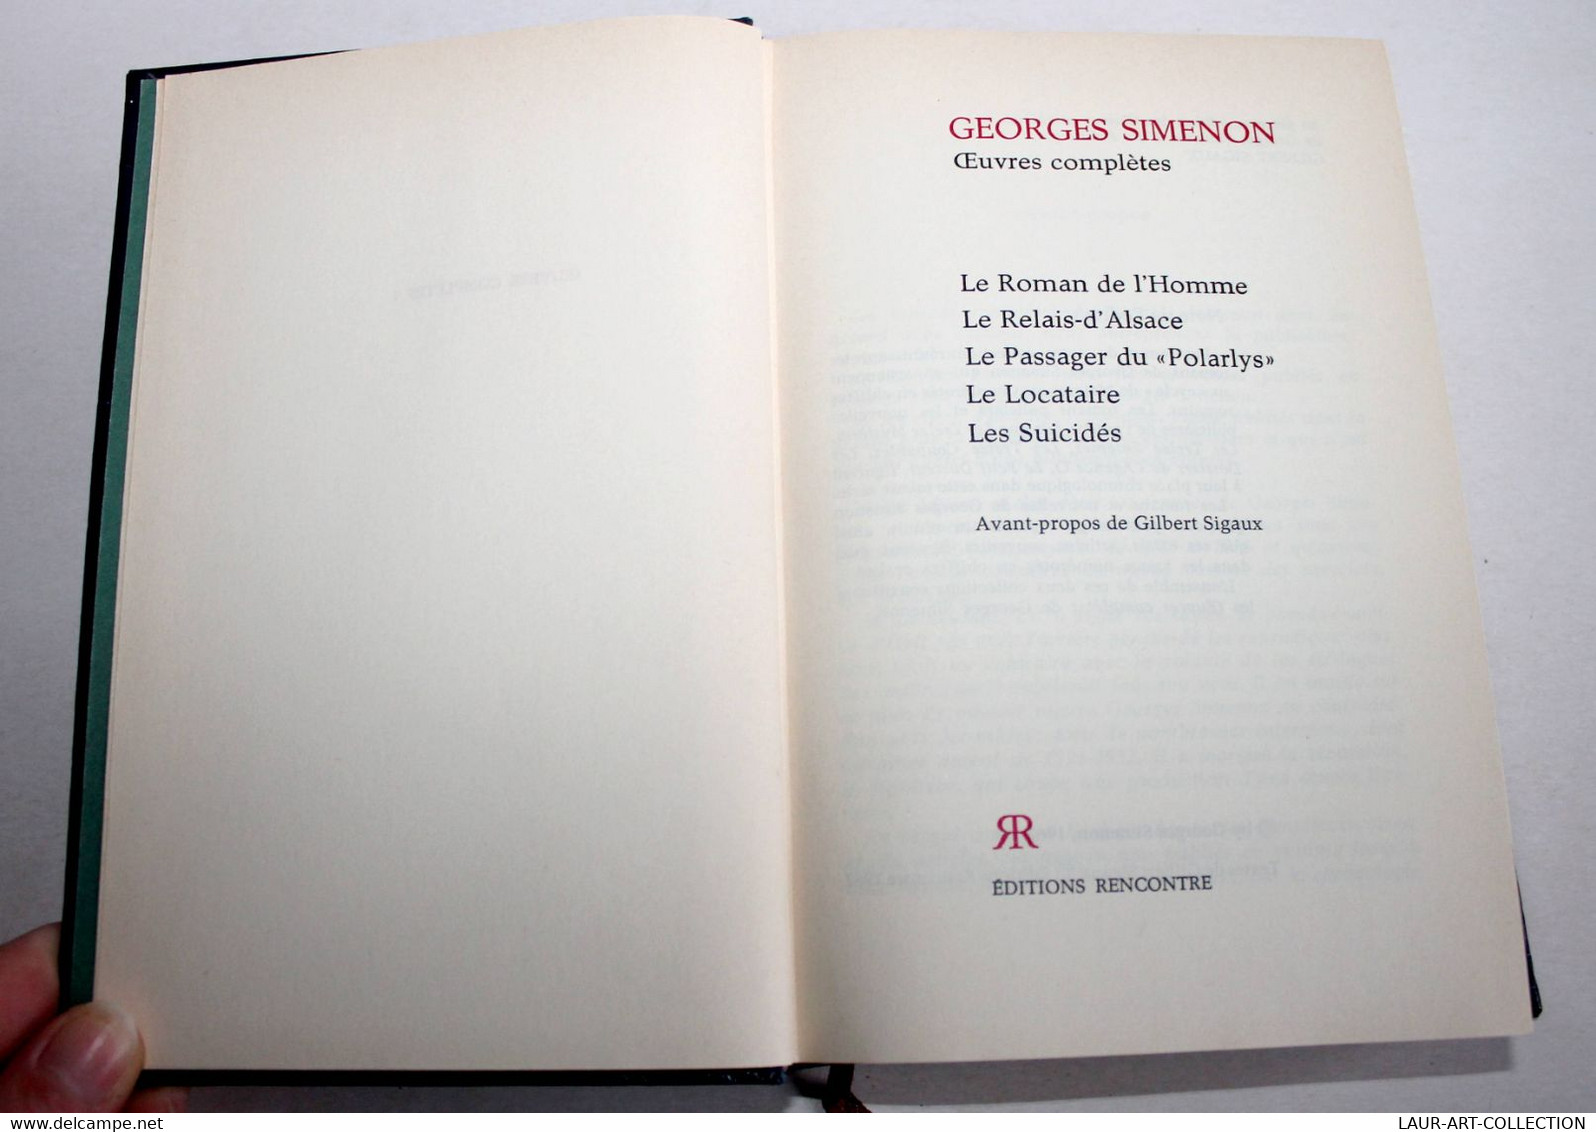 GEORGES SIMENON - OEUVRES COMPLETES - N°1 ROMAN HOMME, RELAIS D'ALSACE, POLARLYS / ANCIEN LIVRE DE COLLECTION (2301.266) - Simenon